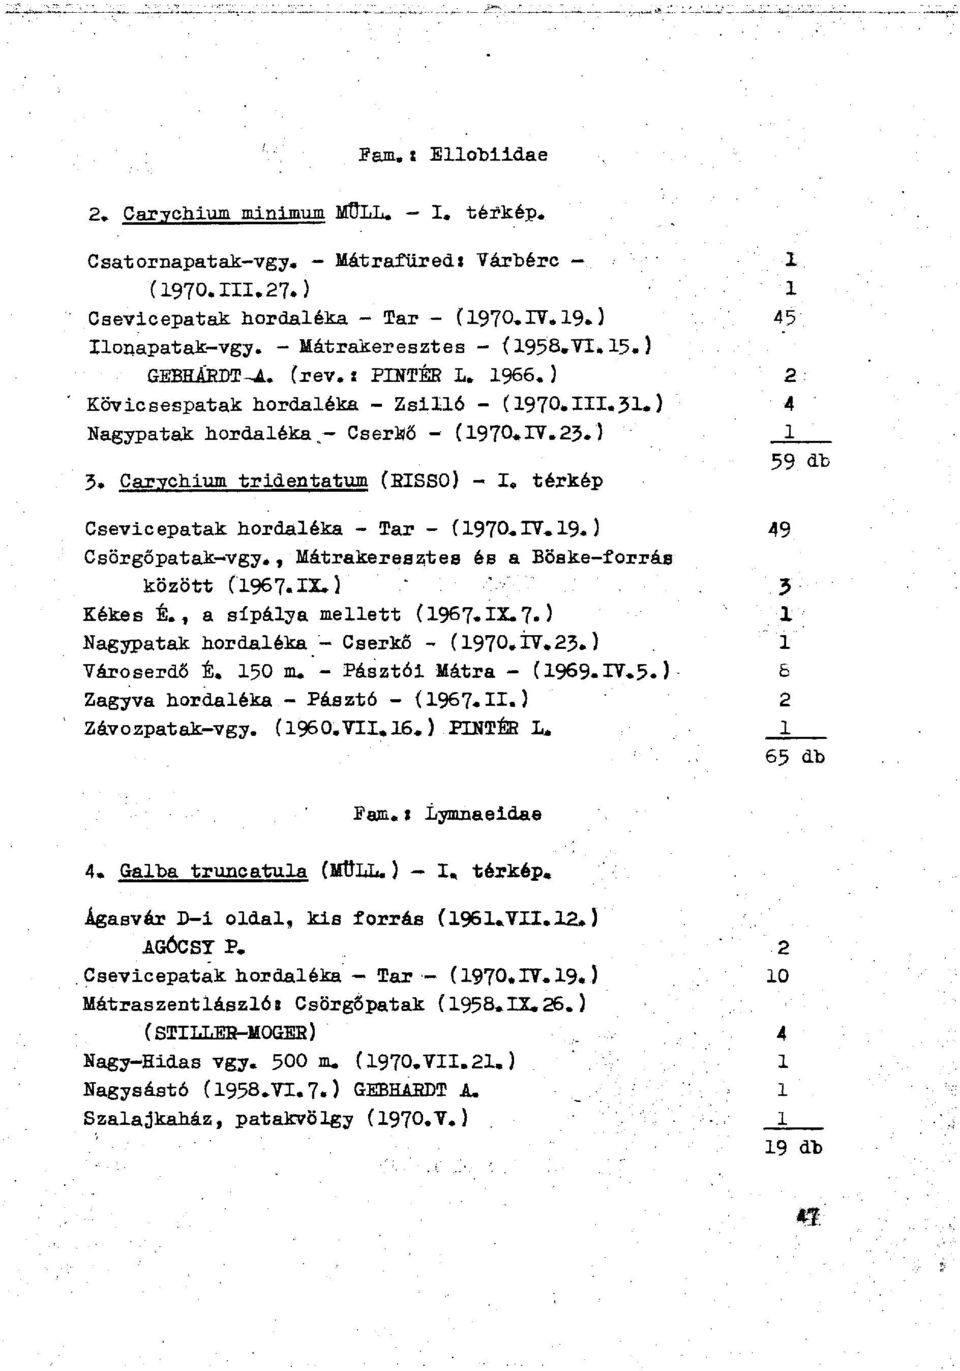 Carychium tridentatum (BISSO) - I. térkép Csevicepatak hordaléka - Tar - í1970.iv,19.) 49 Csörgőpatak-vgy., Mátrakeresztes és a Böske-forrás között (1967. IX.) 3 Kékes É., a sípálya mellett (1967.IX.7. ) 1 Nagypatak hordaléka - Cserkő - (1970.